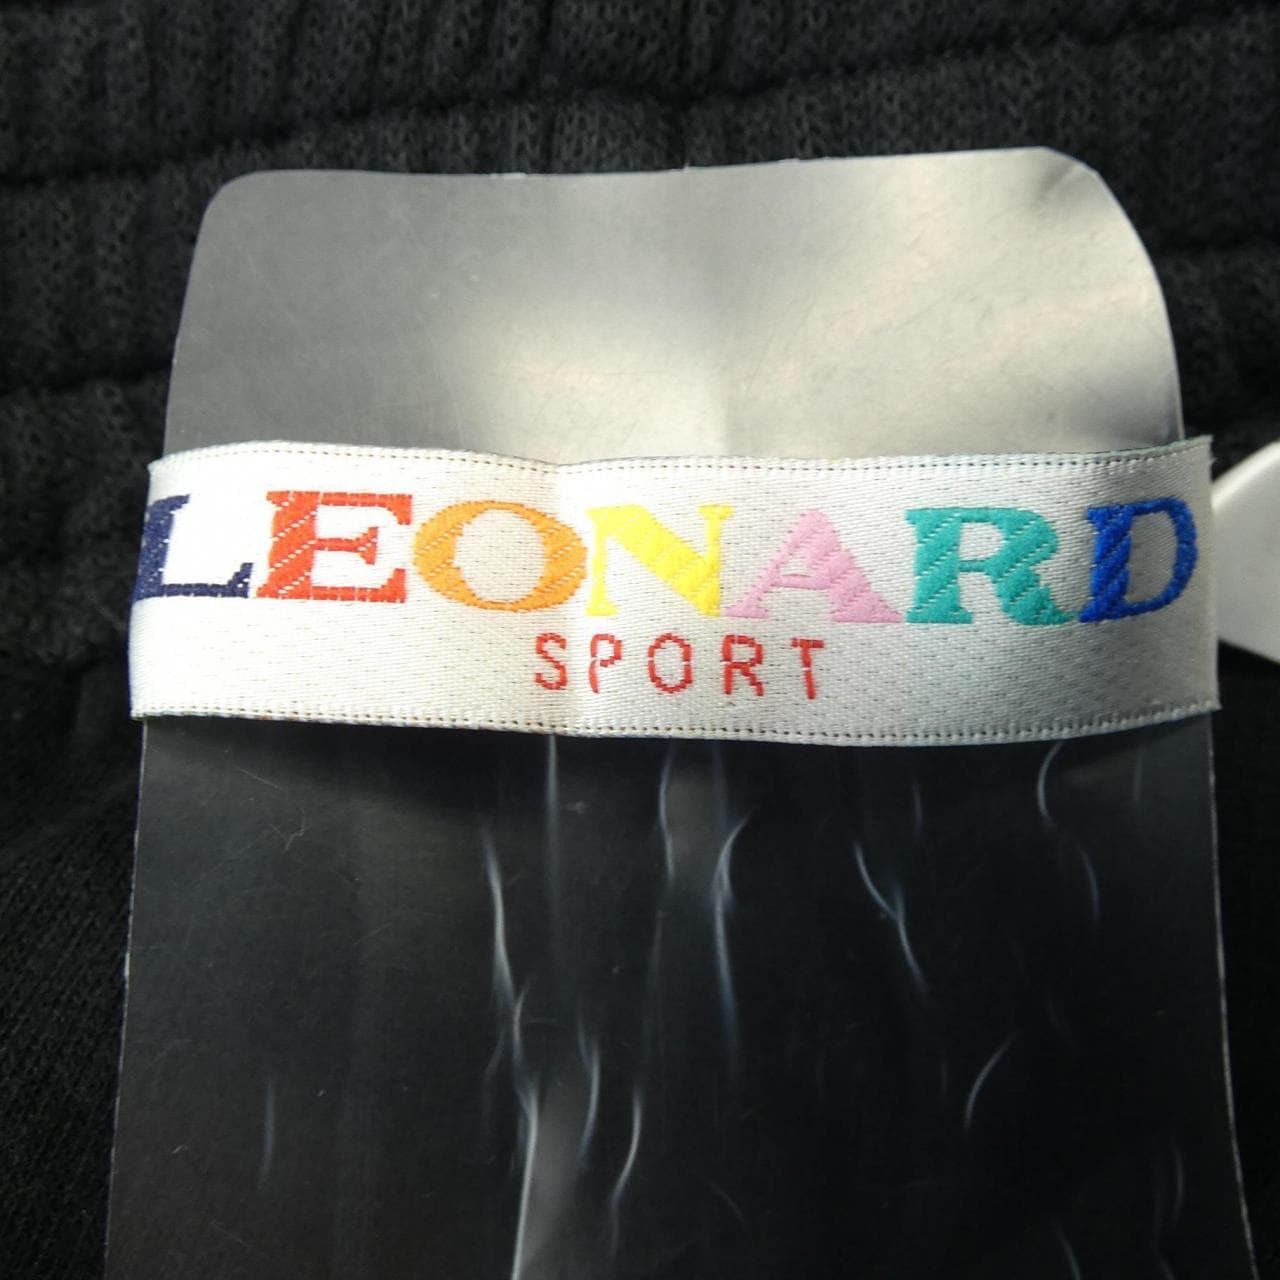 レオナールスポーツ LEONARD SPORT パンツ